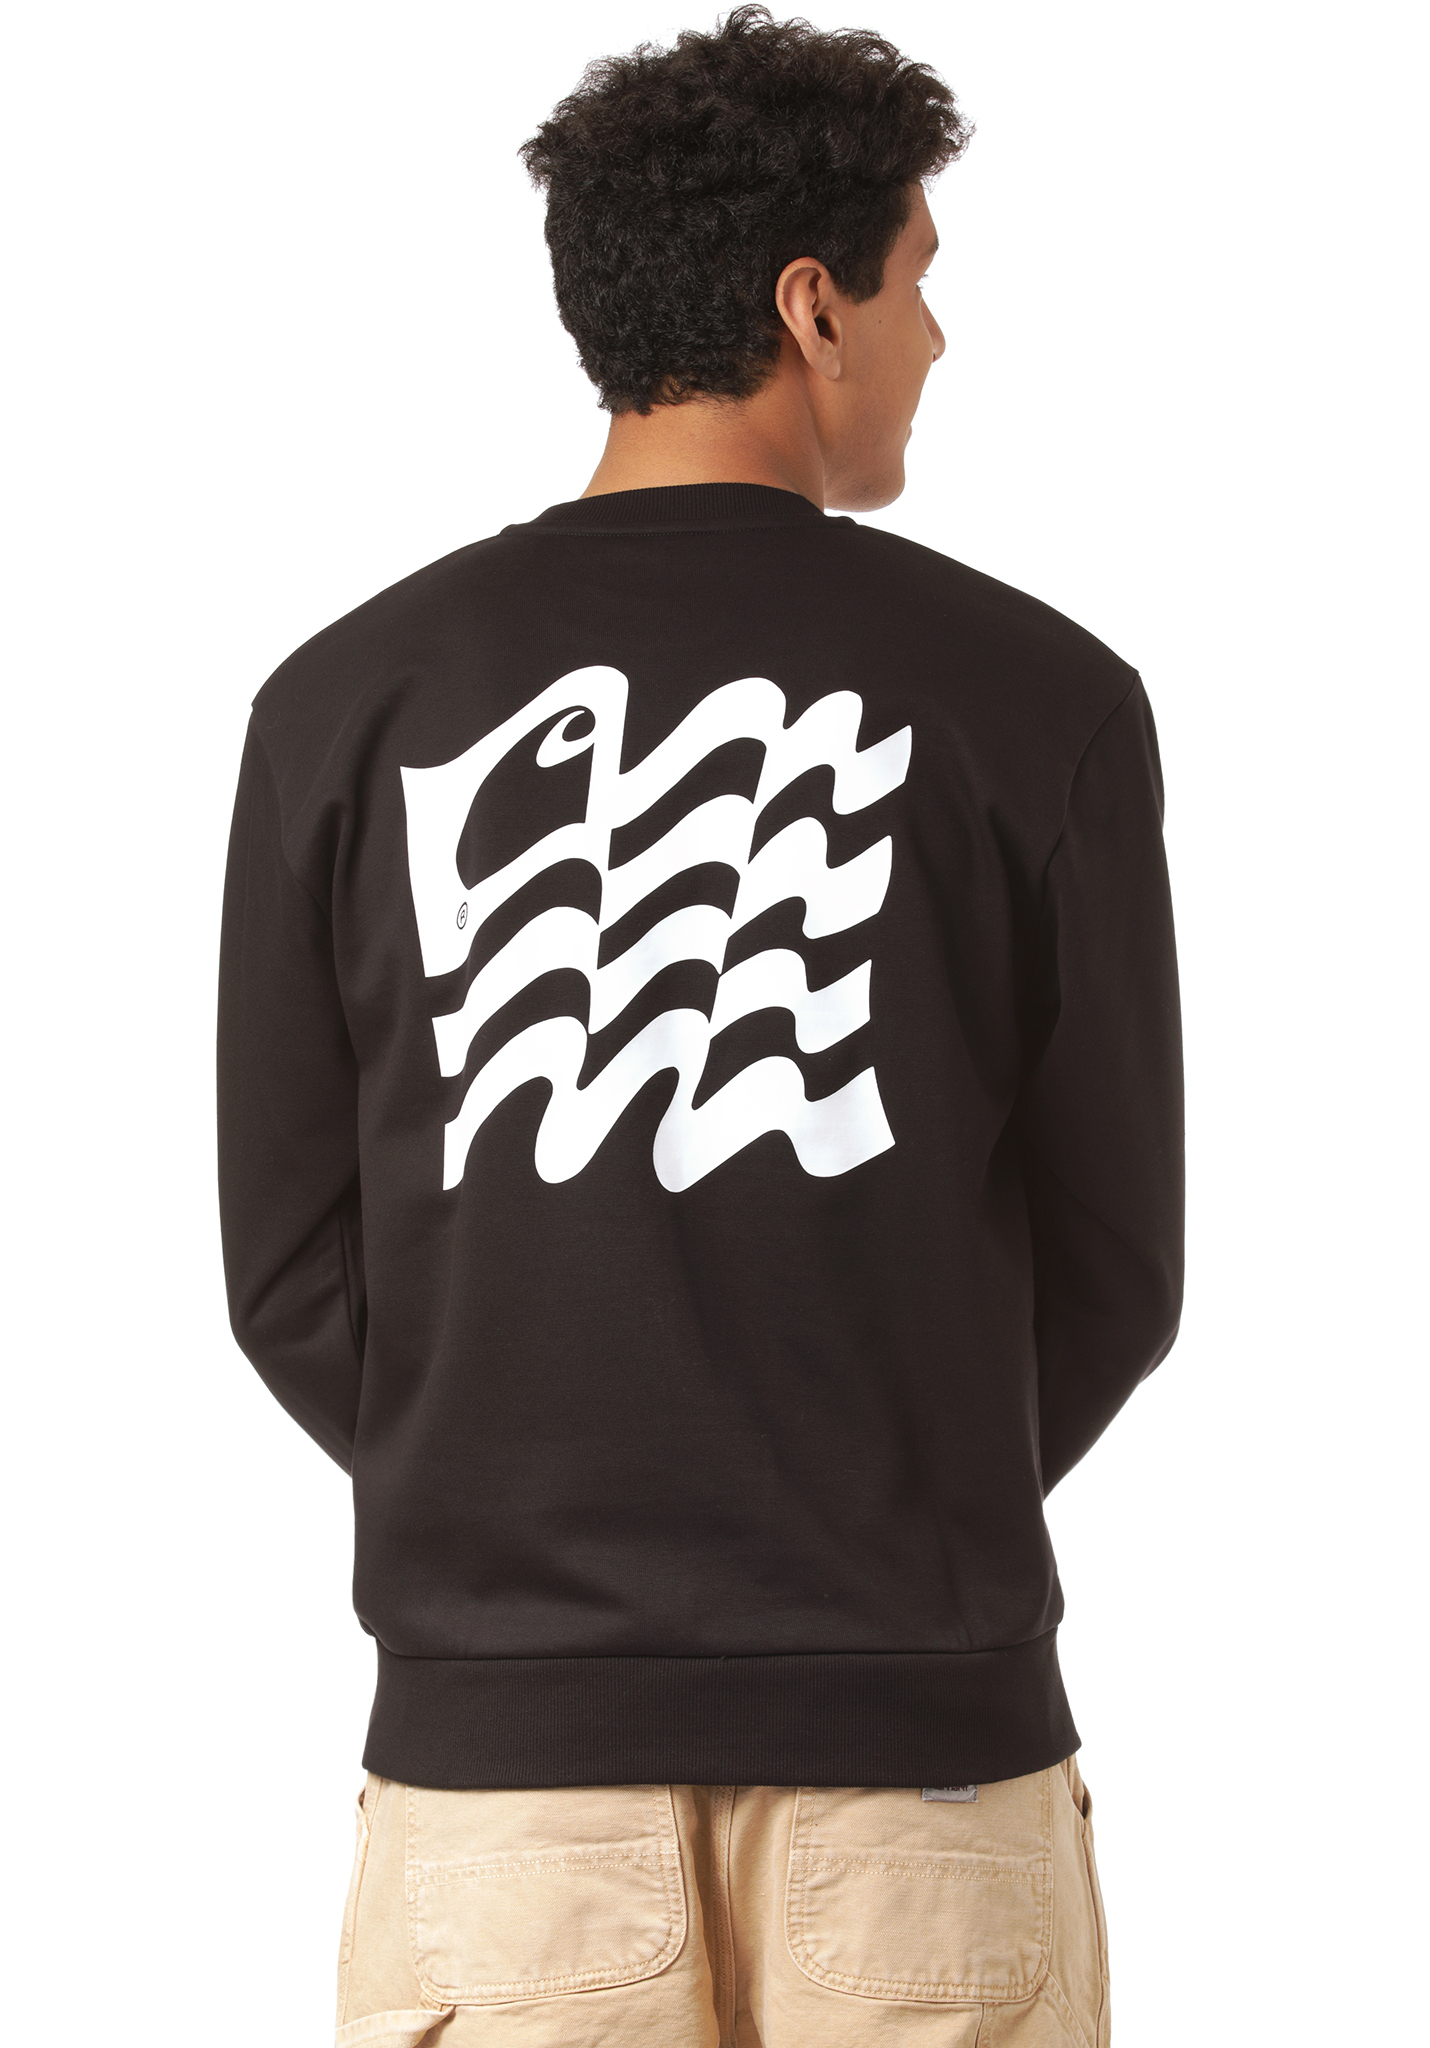 Carhartt WIP Wavy State Sweatshirt schwarz / weiß L